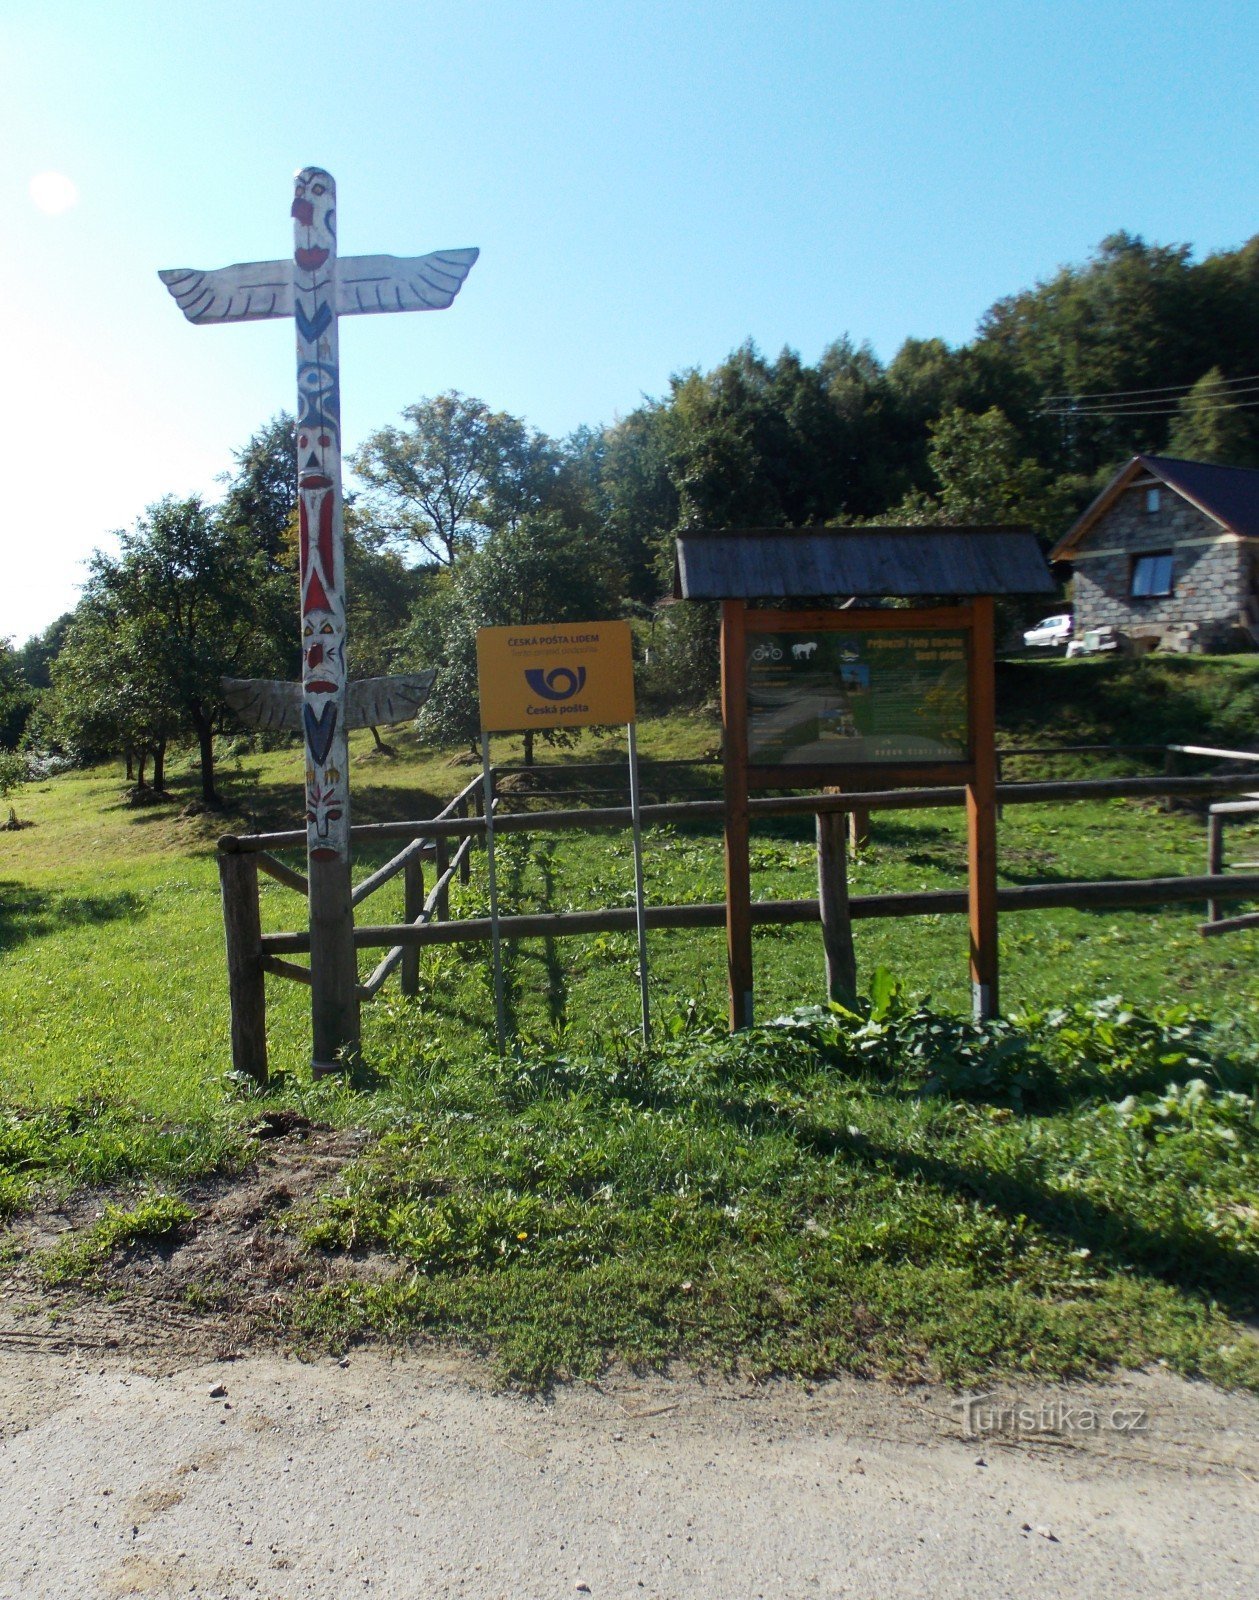 Passeggiata estiva nel villaggio di Prlov